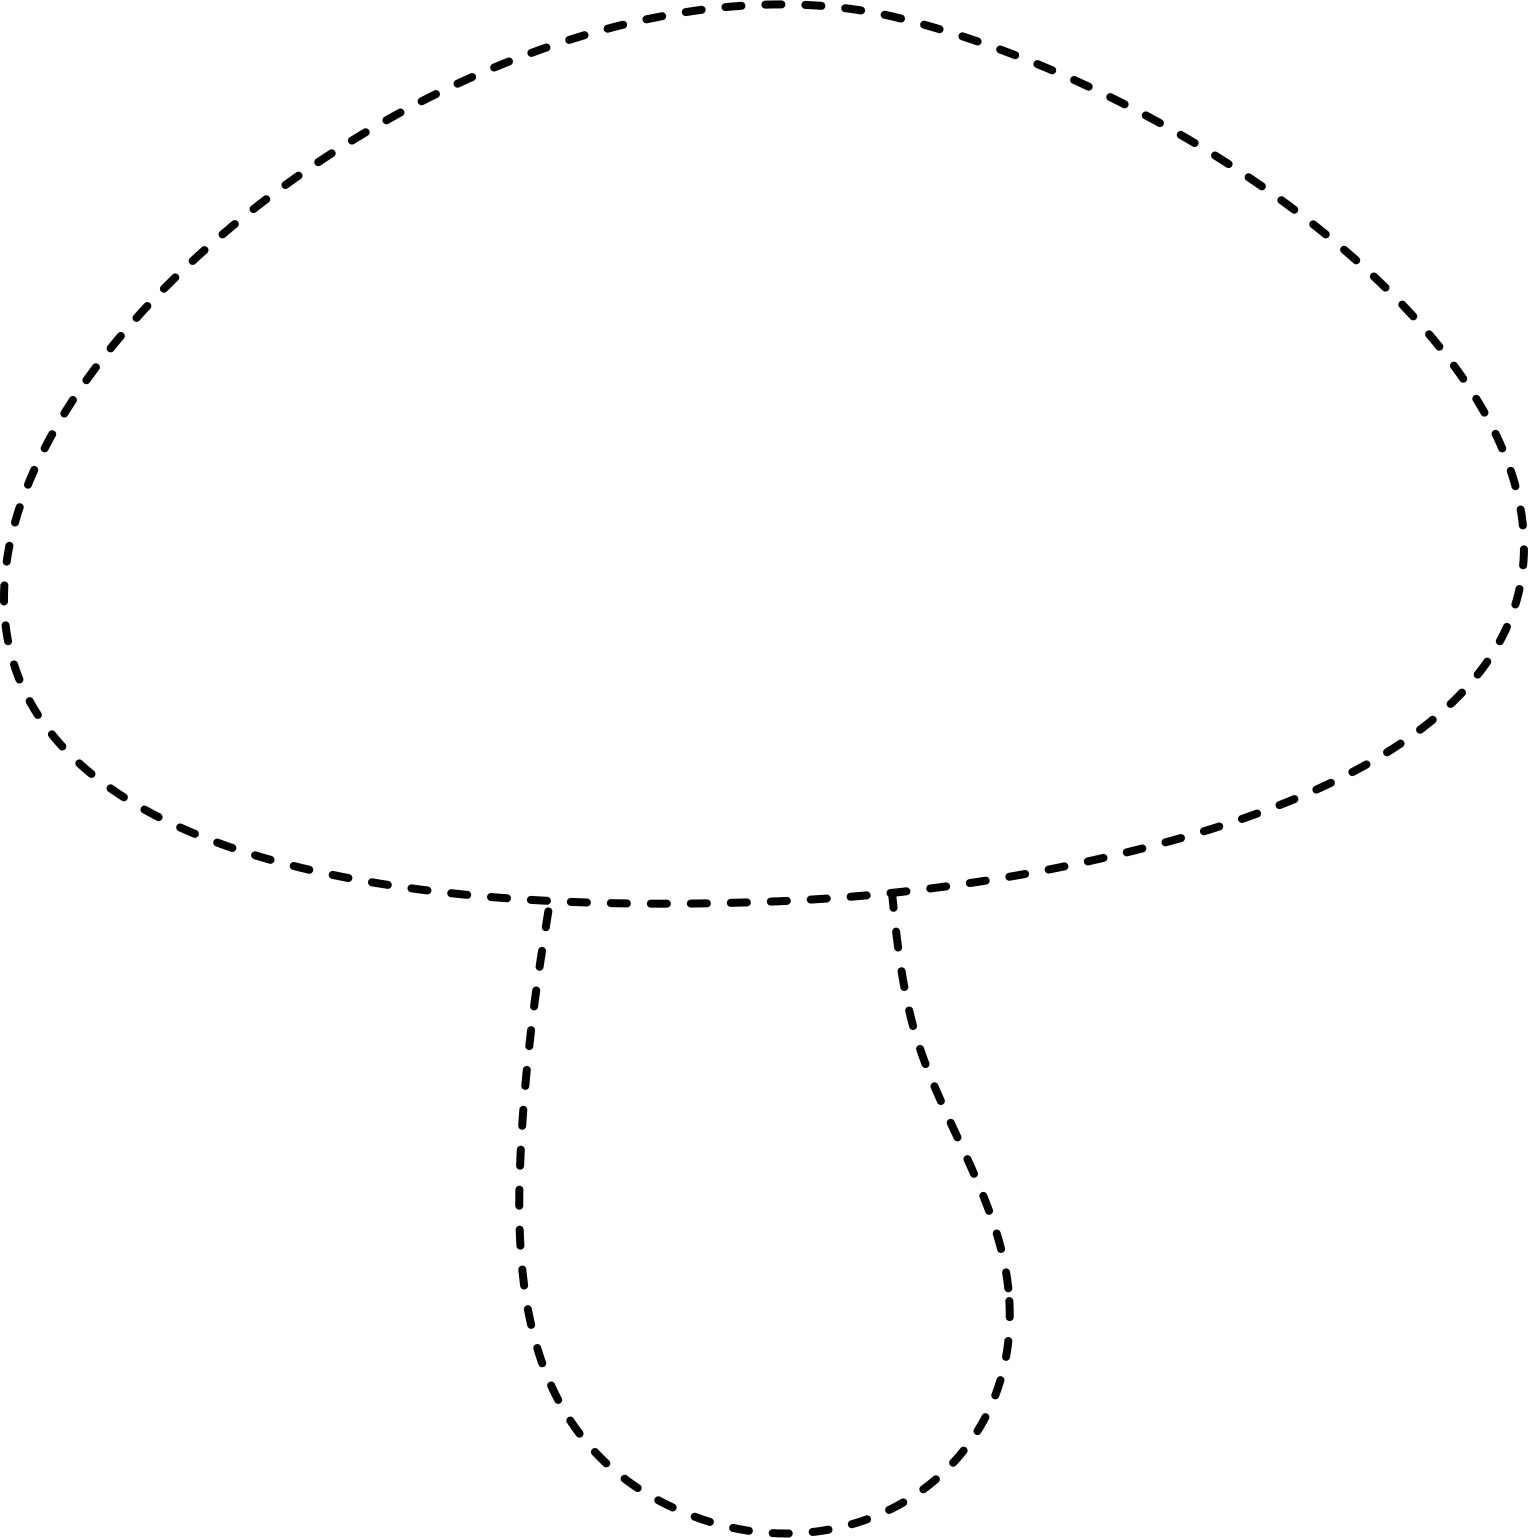 traceable mushroom image